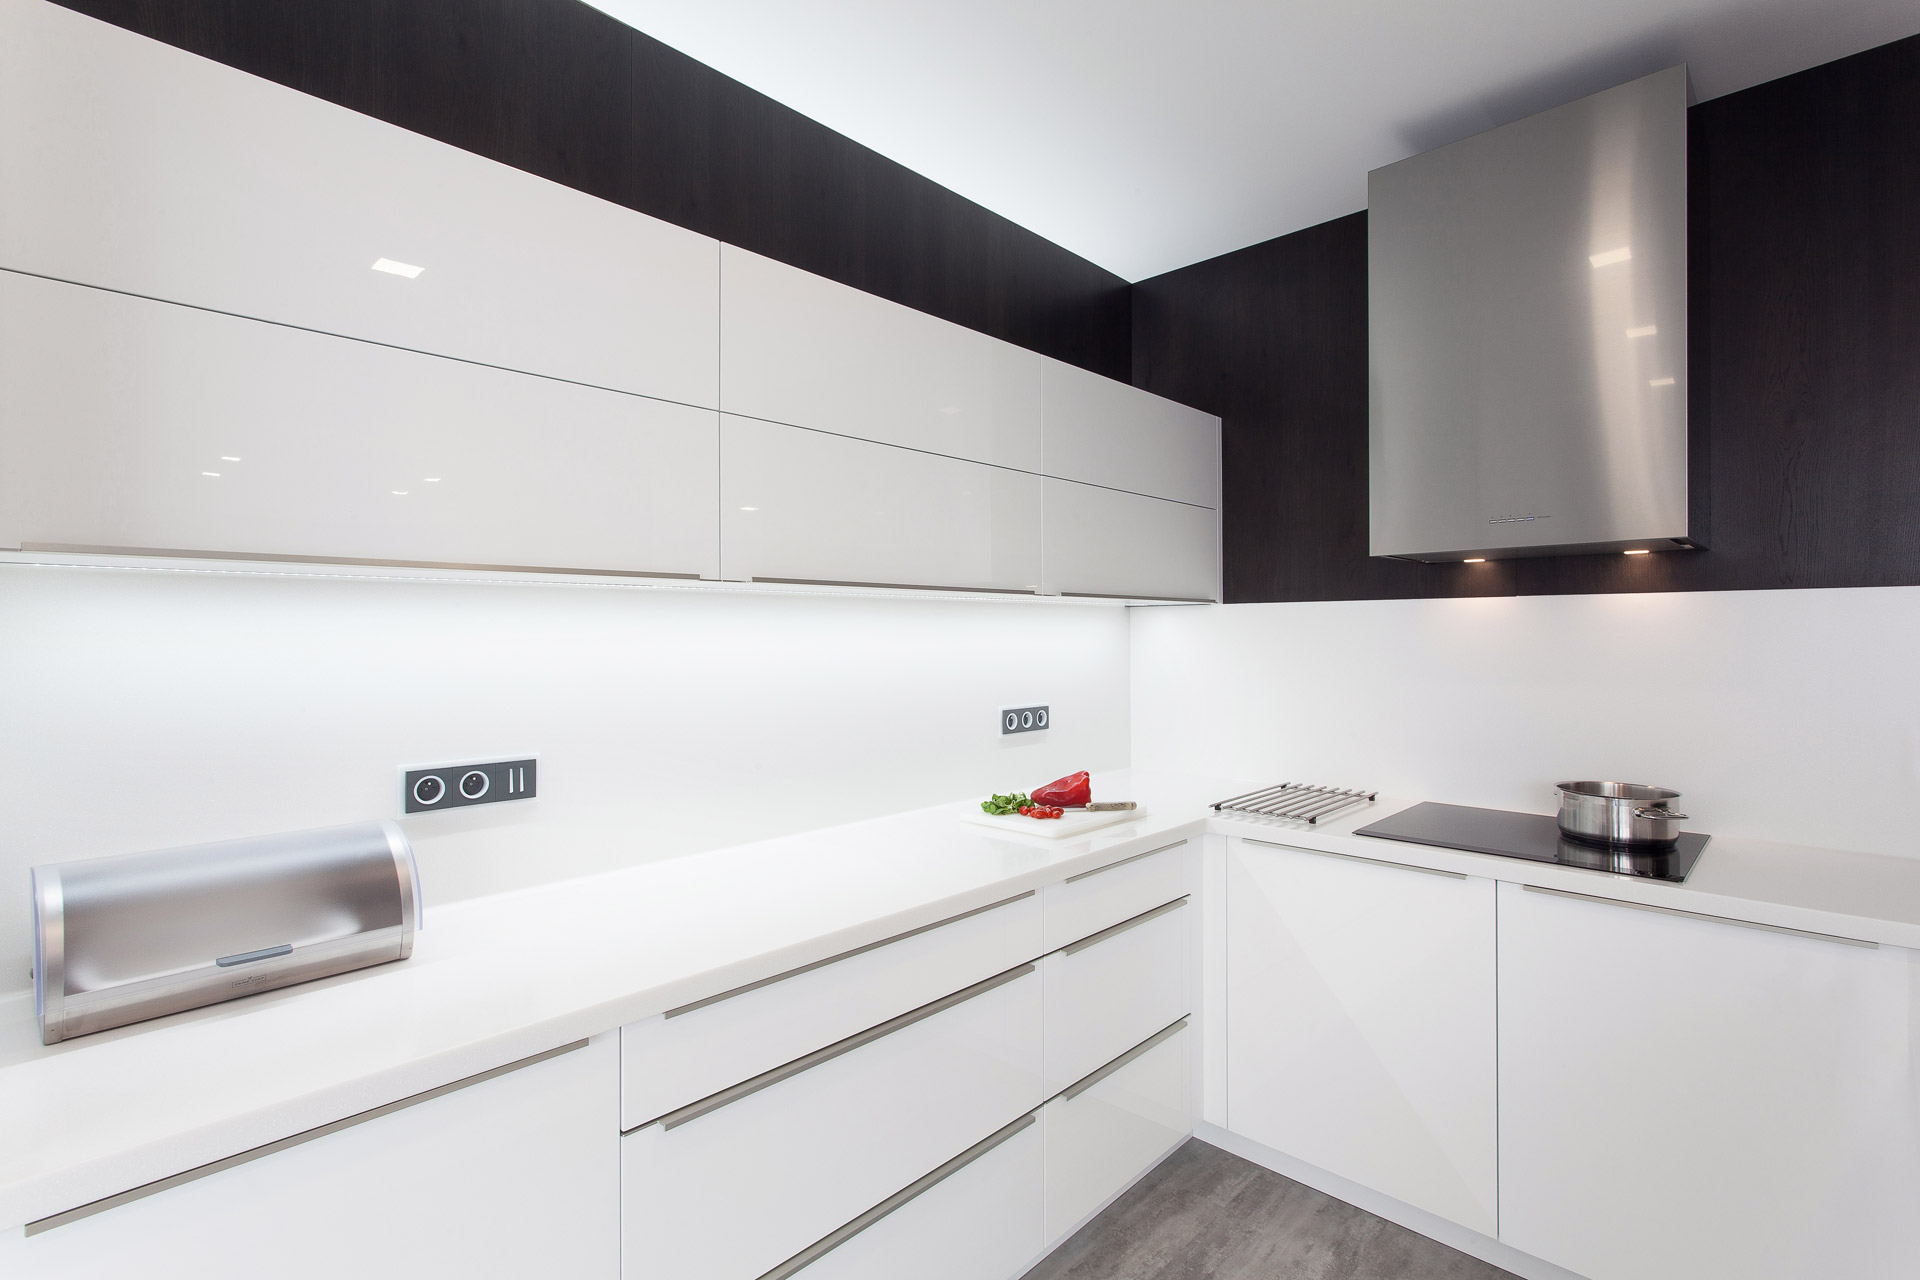 Hanák nábytek Ukázka realizace Moderní kuchyně Bílá kuchyně